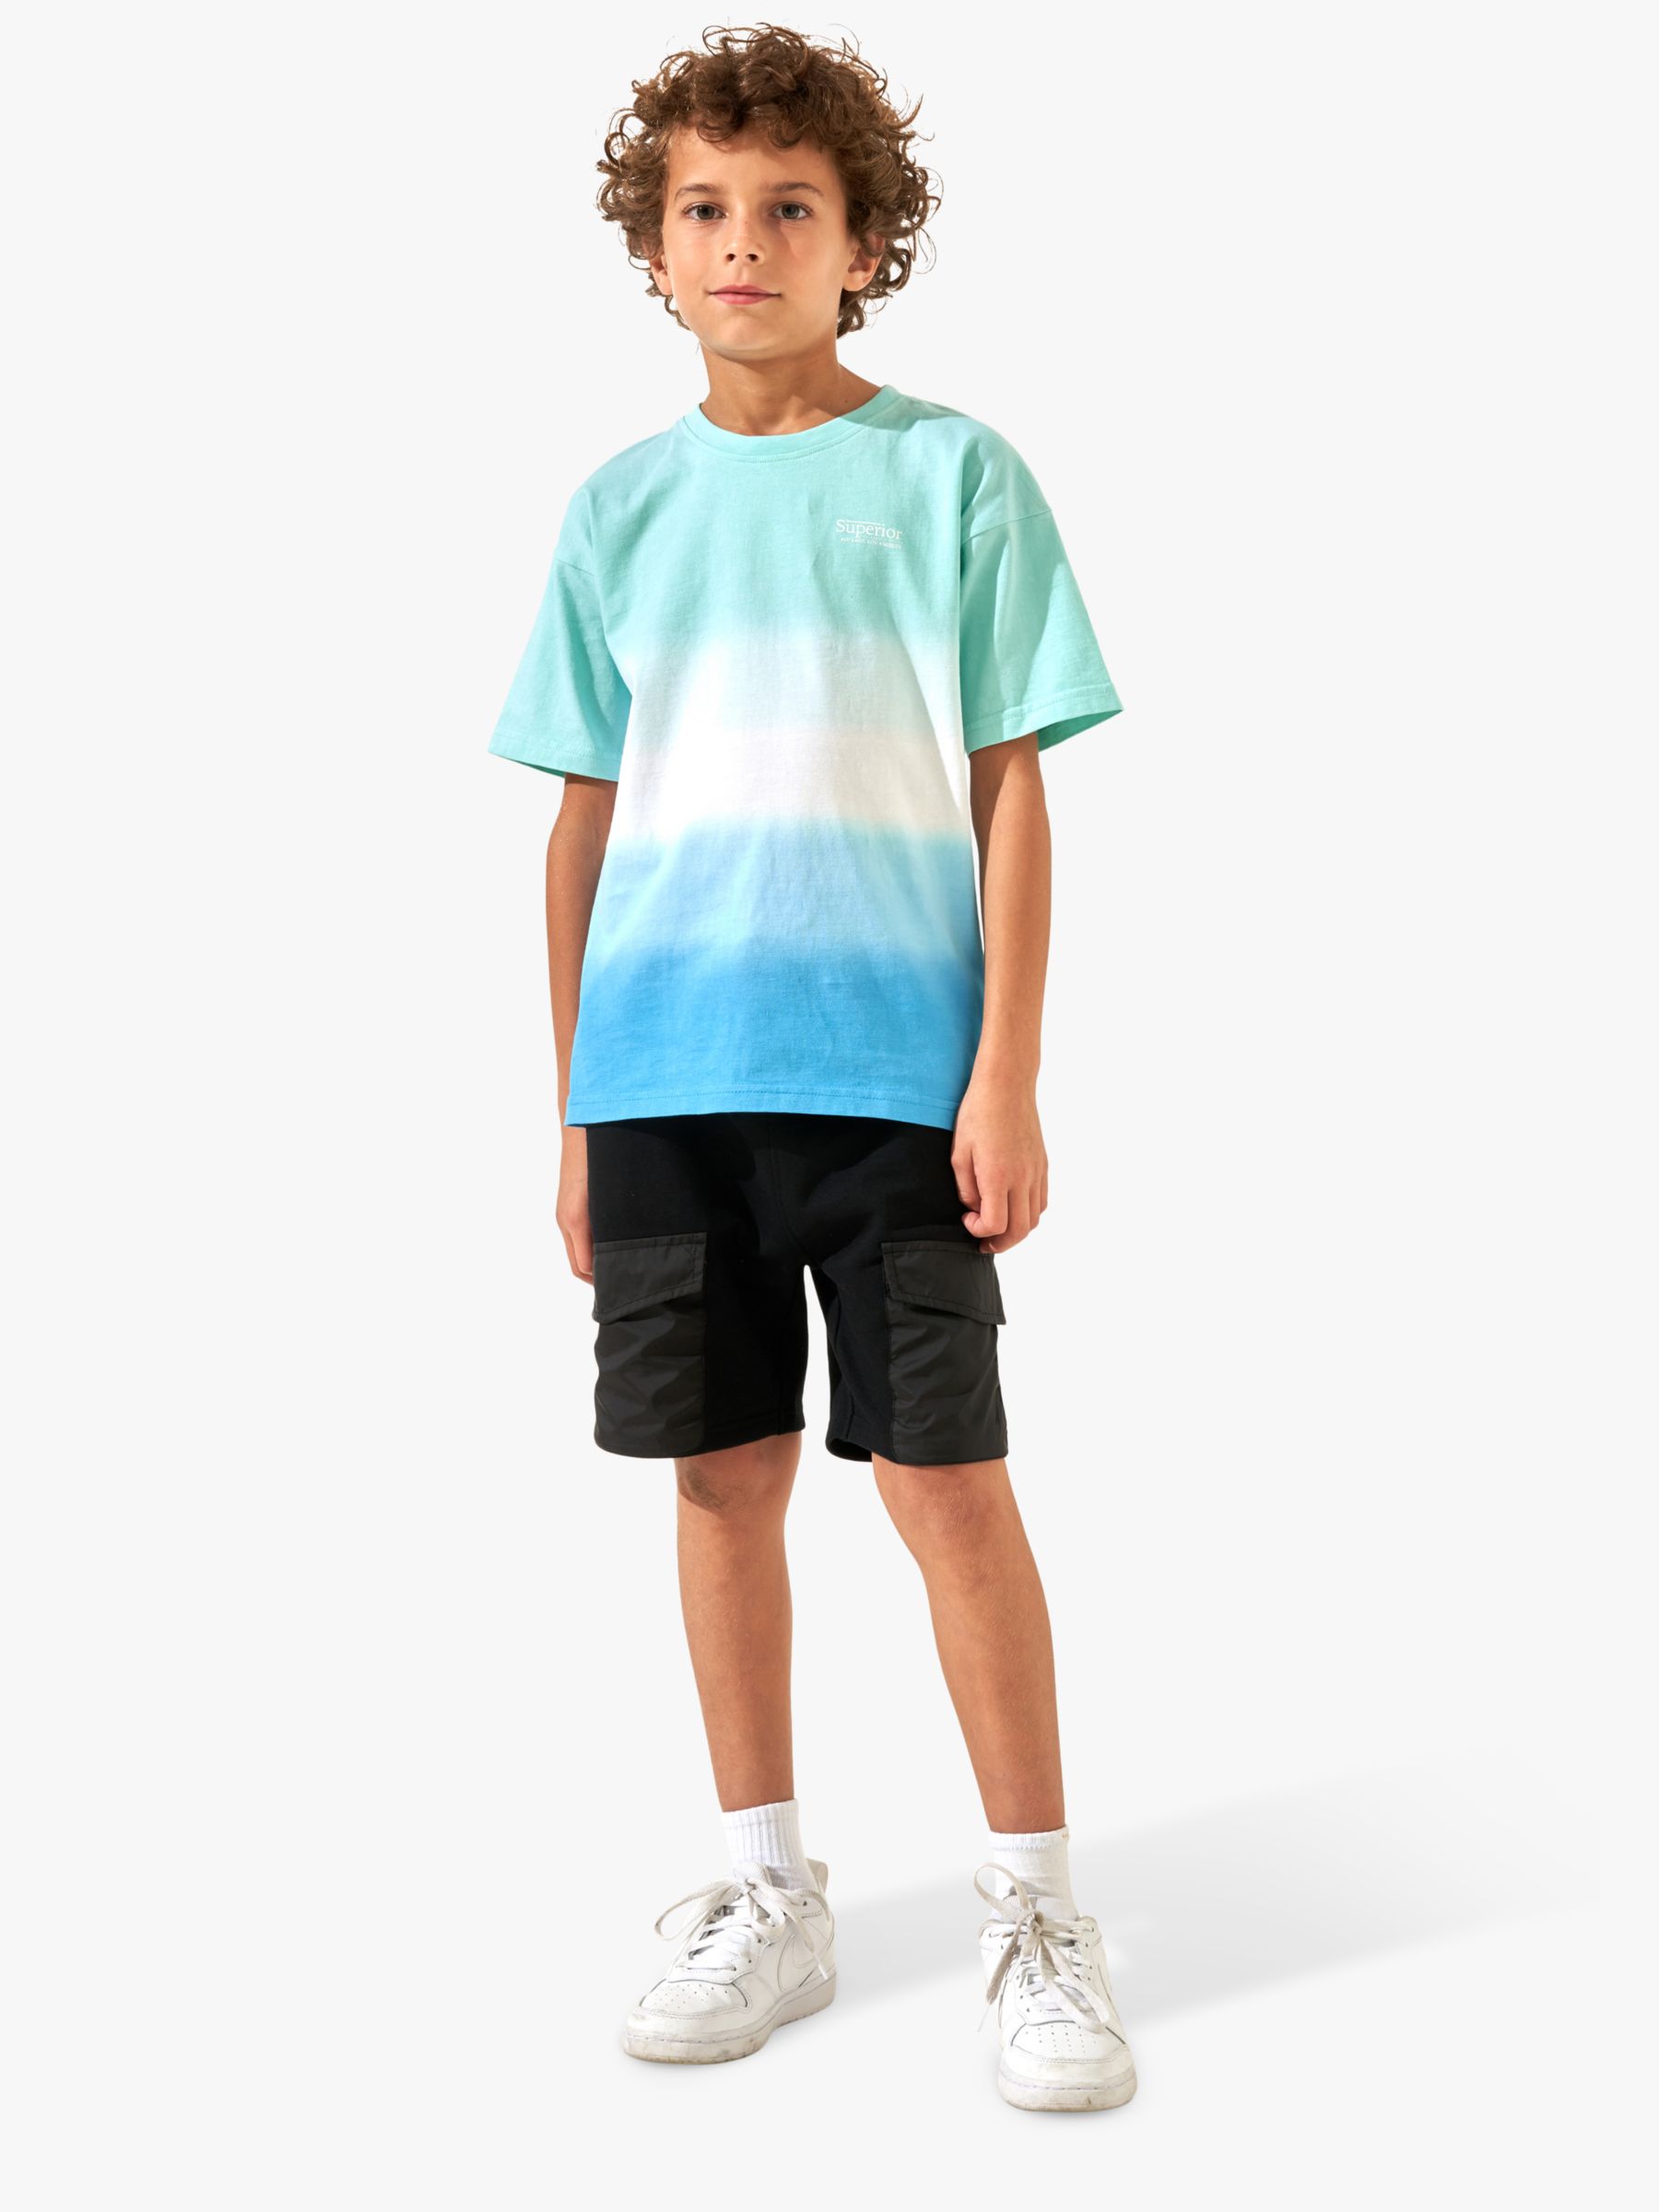 Angel & Rocket Kids' Brad Ombre Tie Dye T-Shirt, Aqua, 3-4 years